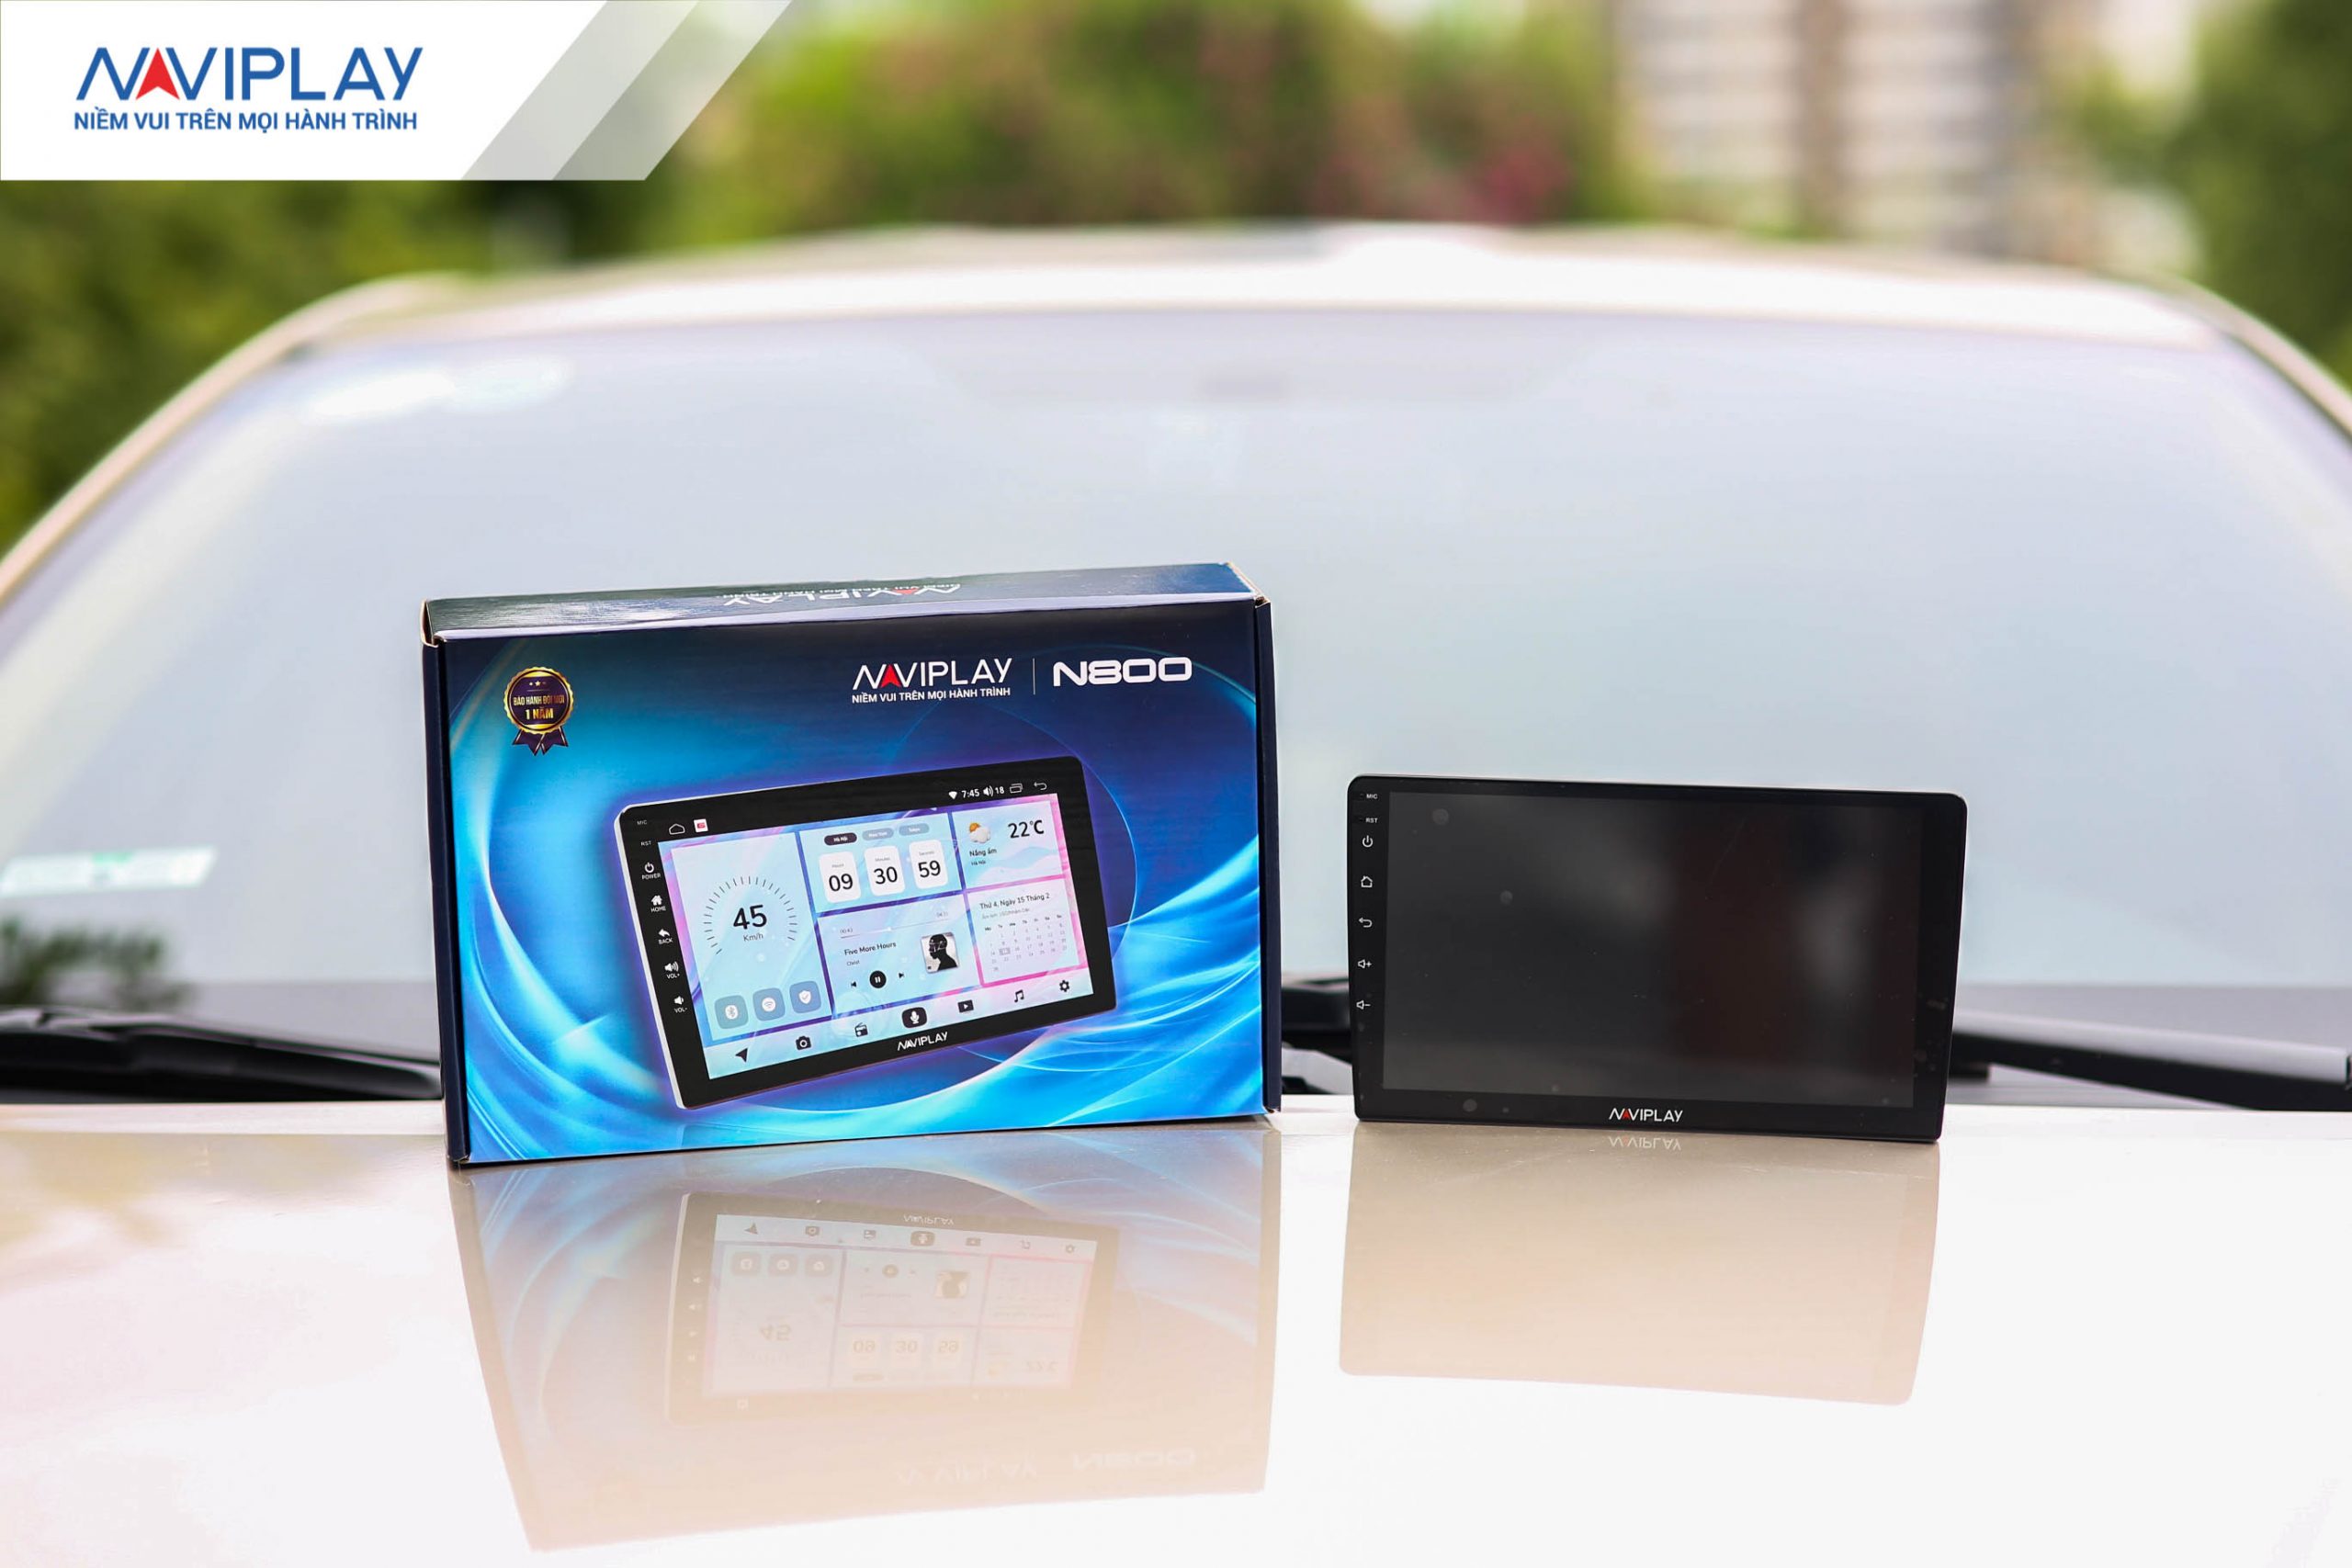 Màn hình NaviPlay N800 chính hãng – Thiết bị thông minh giá rẻ cho ô tô